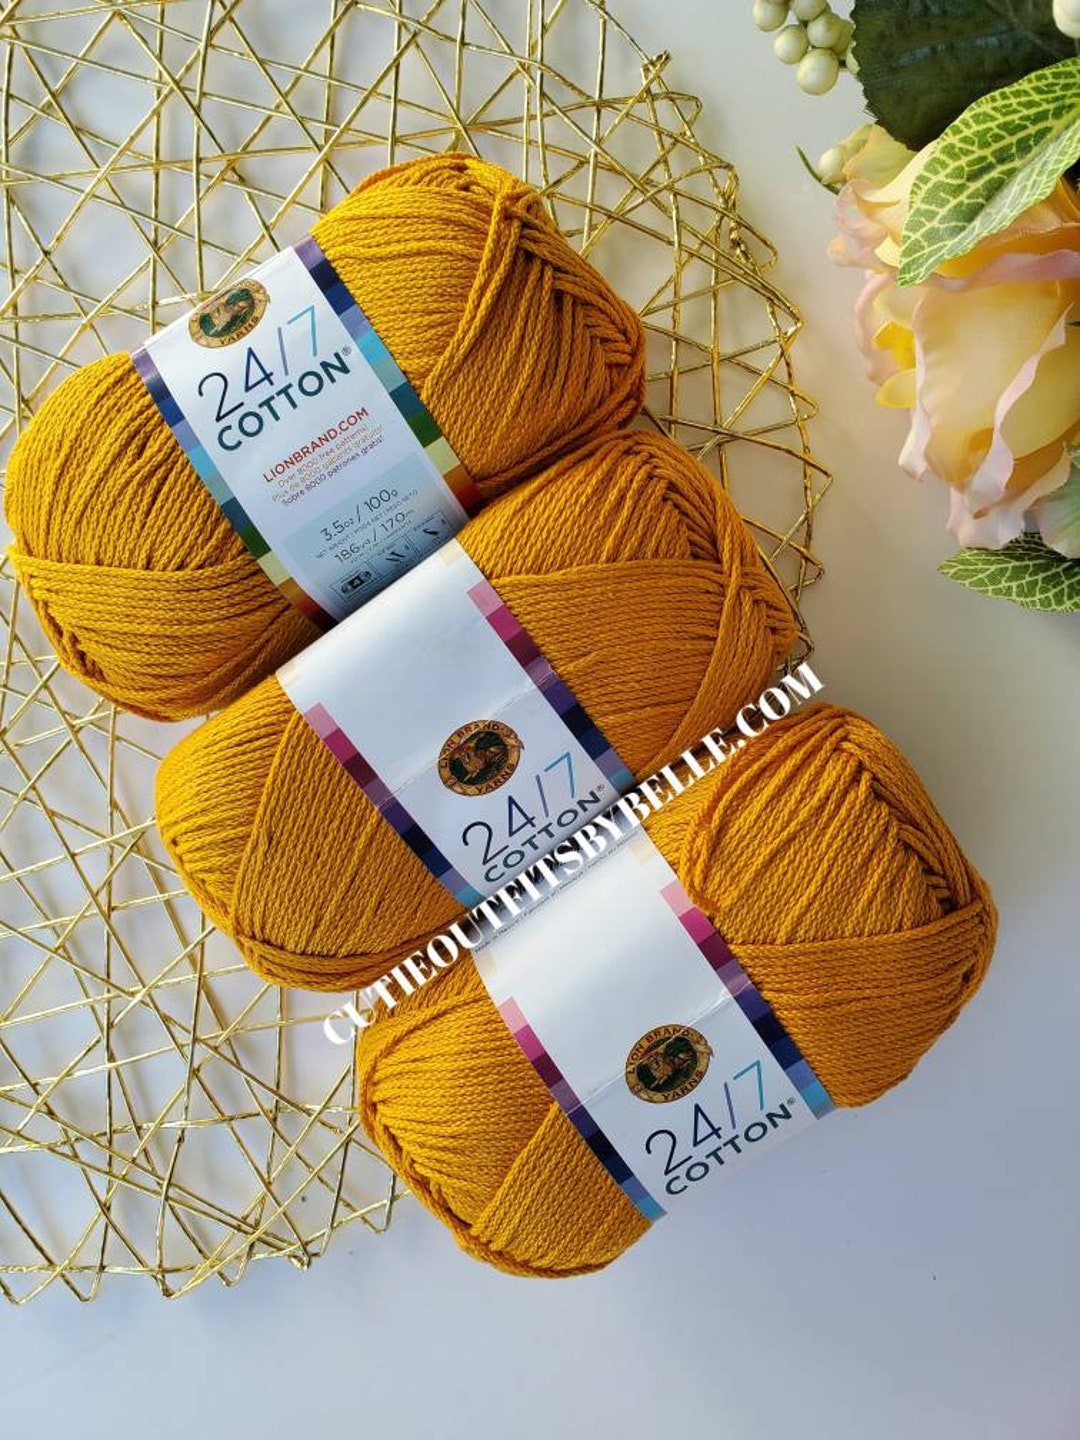 Lion Brand Yarn, 24/7 Cotton Yarn Goldenrod Color, Mercerized Cotton Yarn,  Natural Fiber Yarns, Crochet Yarn, Knitting Yarn, Weaving Yarn 